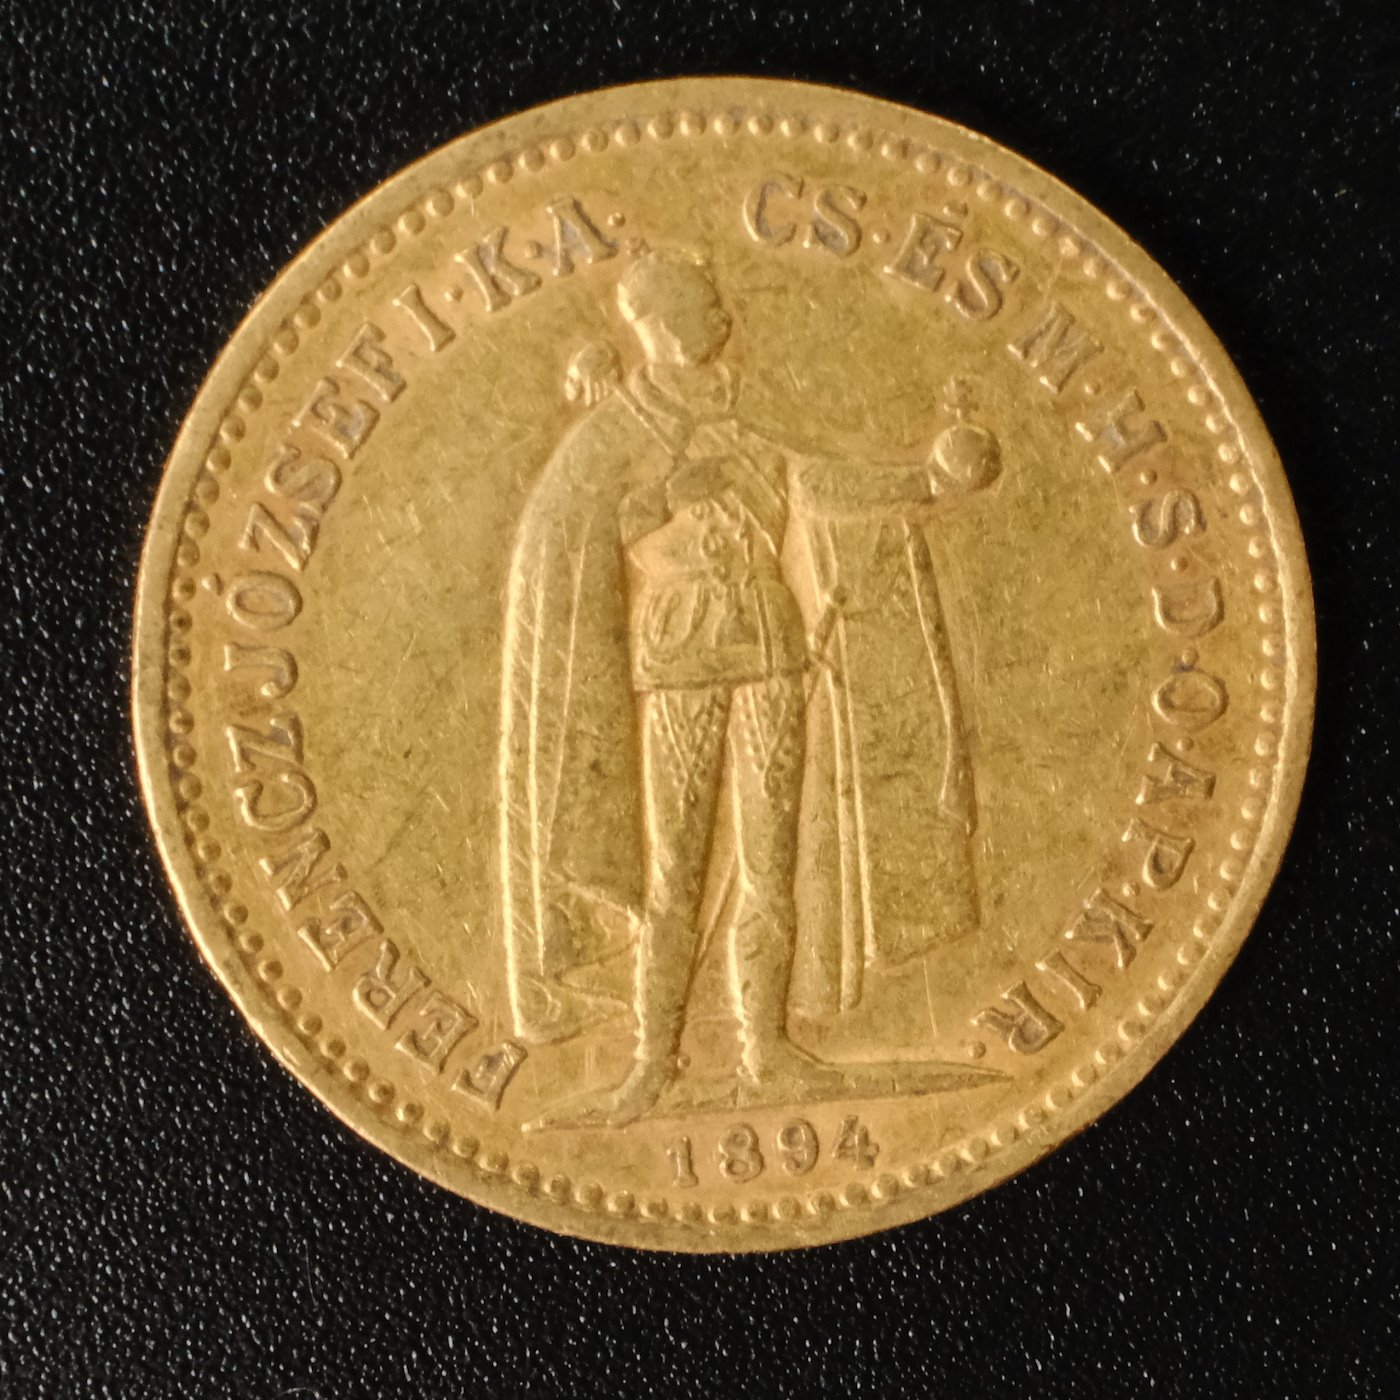 Mince - Rakousko Uhersko zlatá 10 Koruna 1894 K.B. uherská, Zlato 900/1000, hrubá hmotnost mince 3,387g